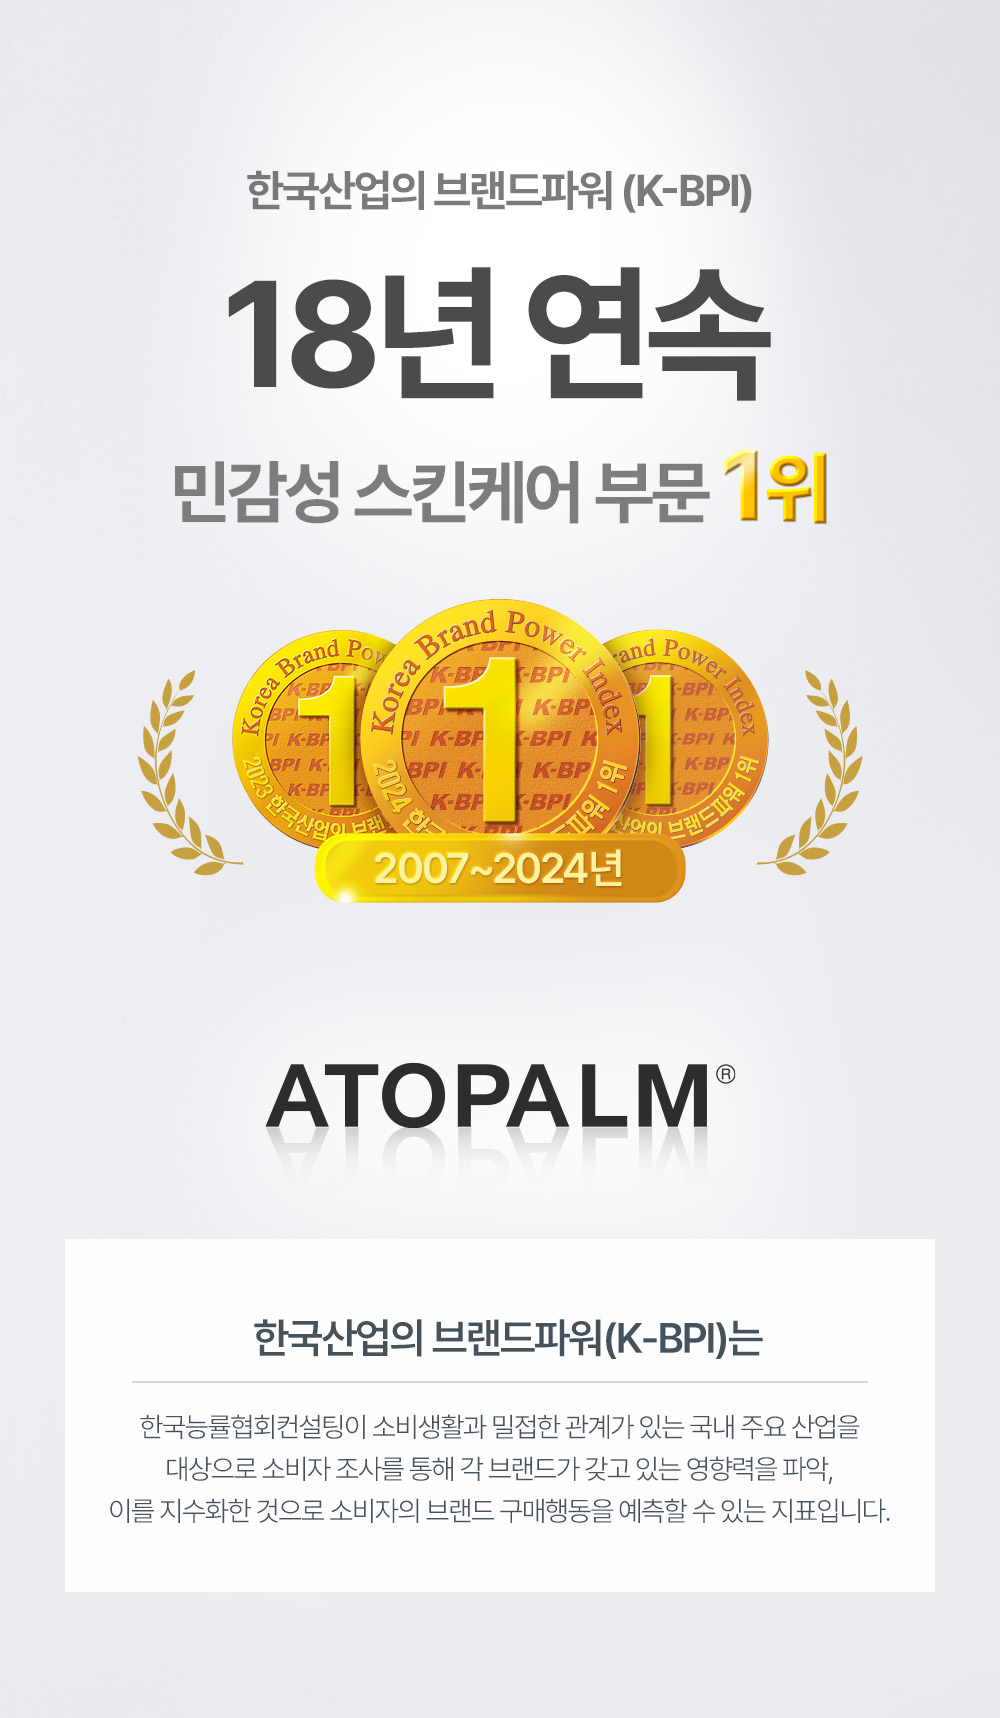 아토팜 KBPI(한국산업의 브랜드파워) 16년 연속 수상 민감성 스킨케어 부문 1위